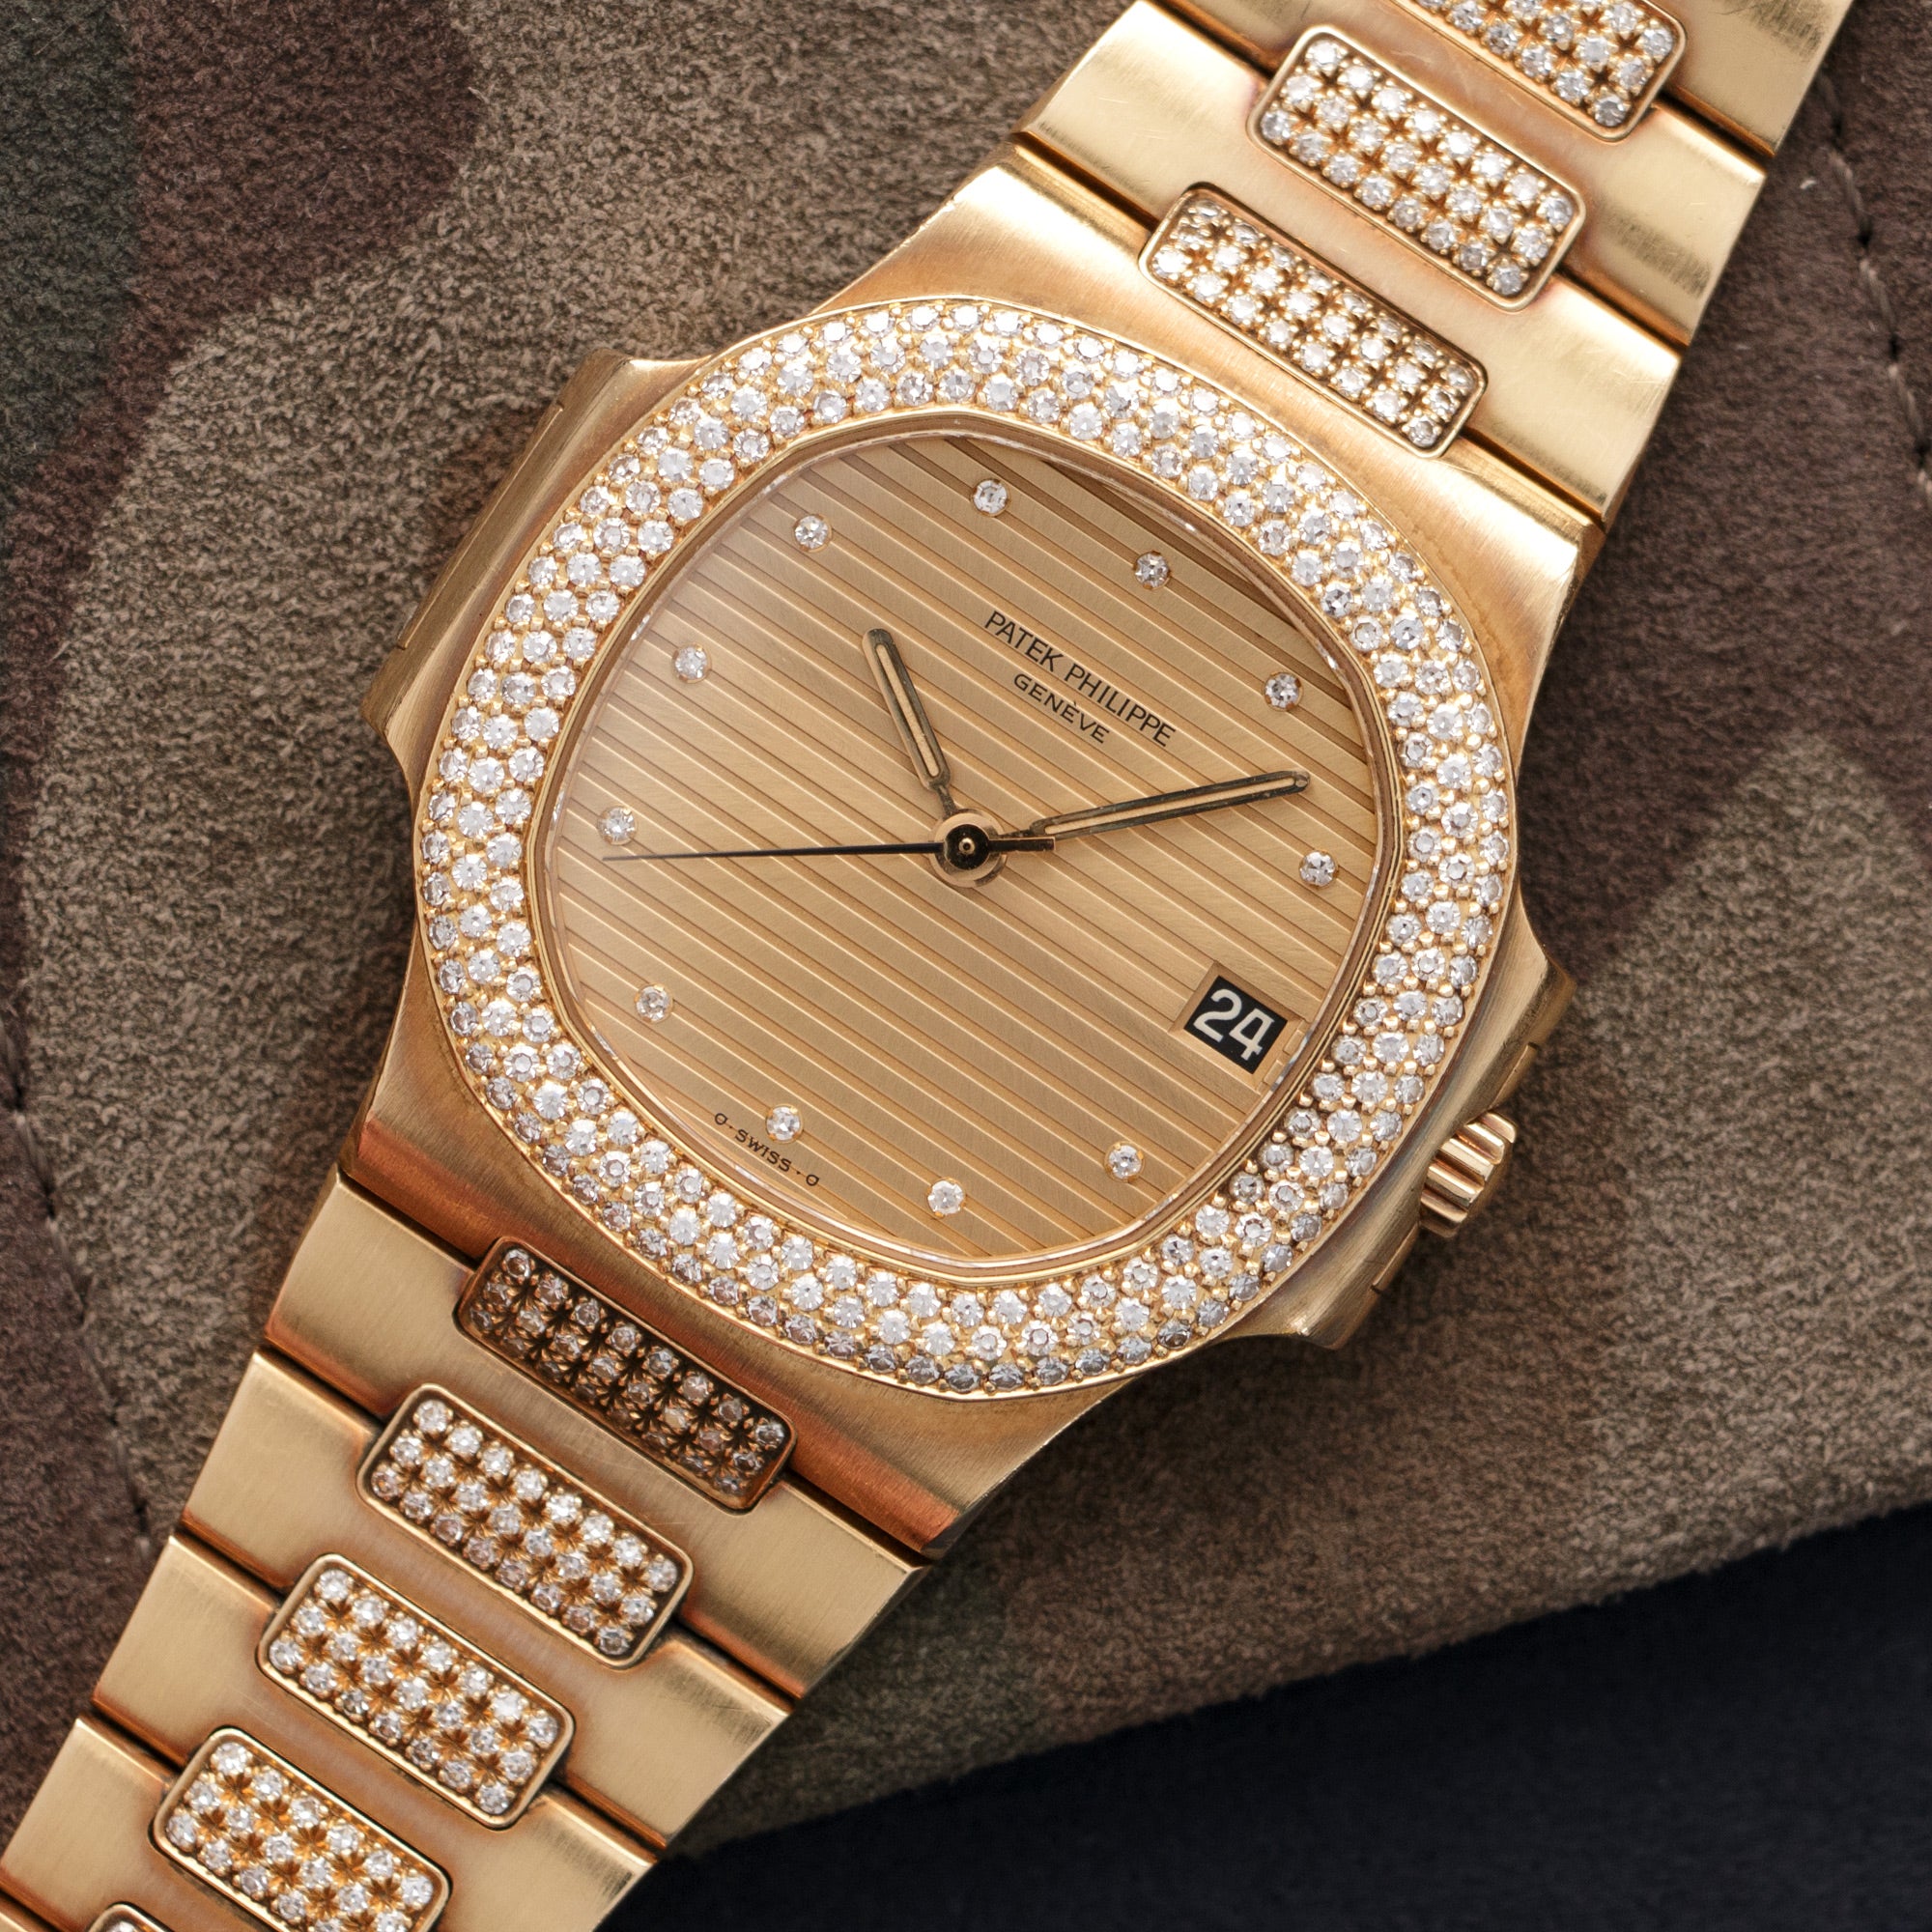 Patek Philippe - Patek Philippe Yellow Gold Nautilus Diamond Watch Ref. 3800 - The Keystone Watches